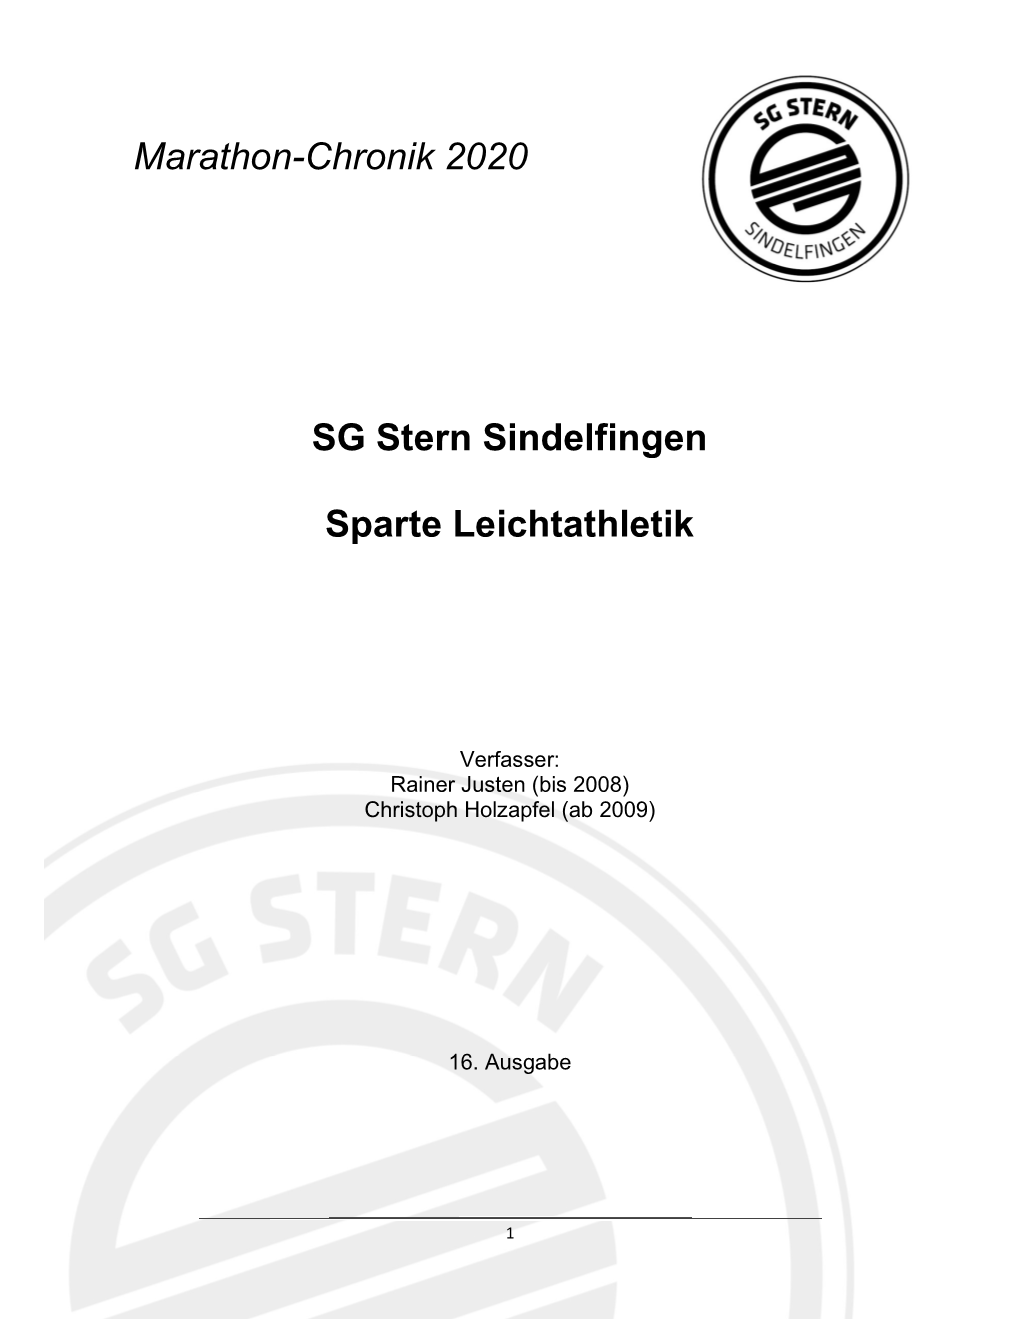 SG Stern Sindelfingen Sparte Leichtathletik Marathon-Chronik 2020